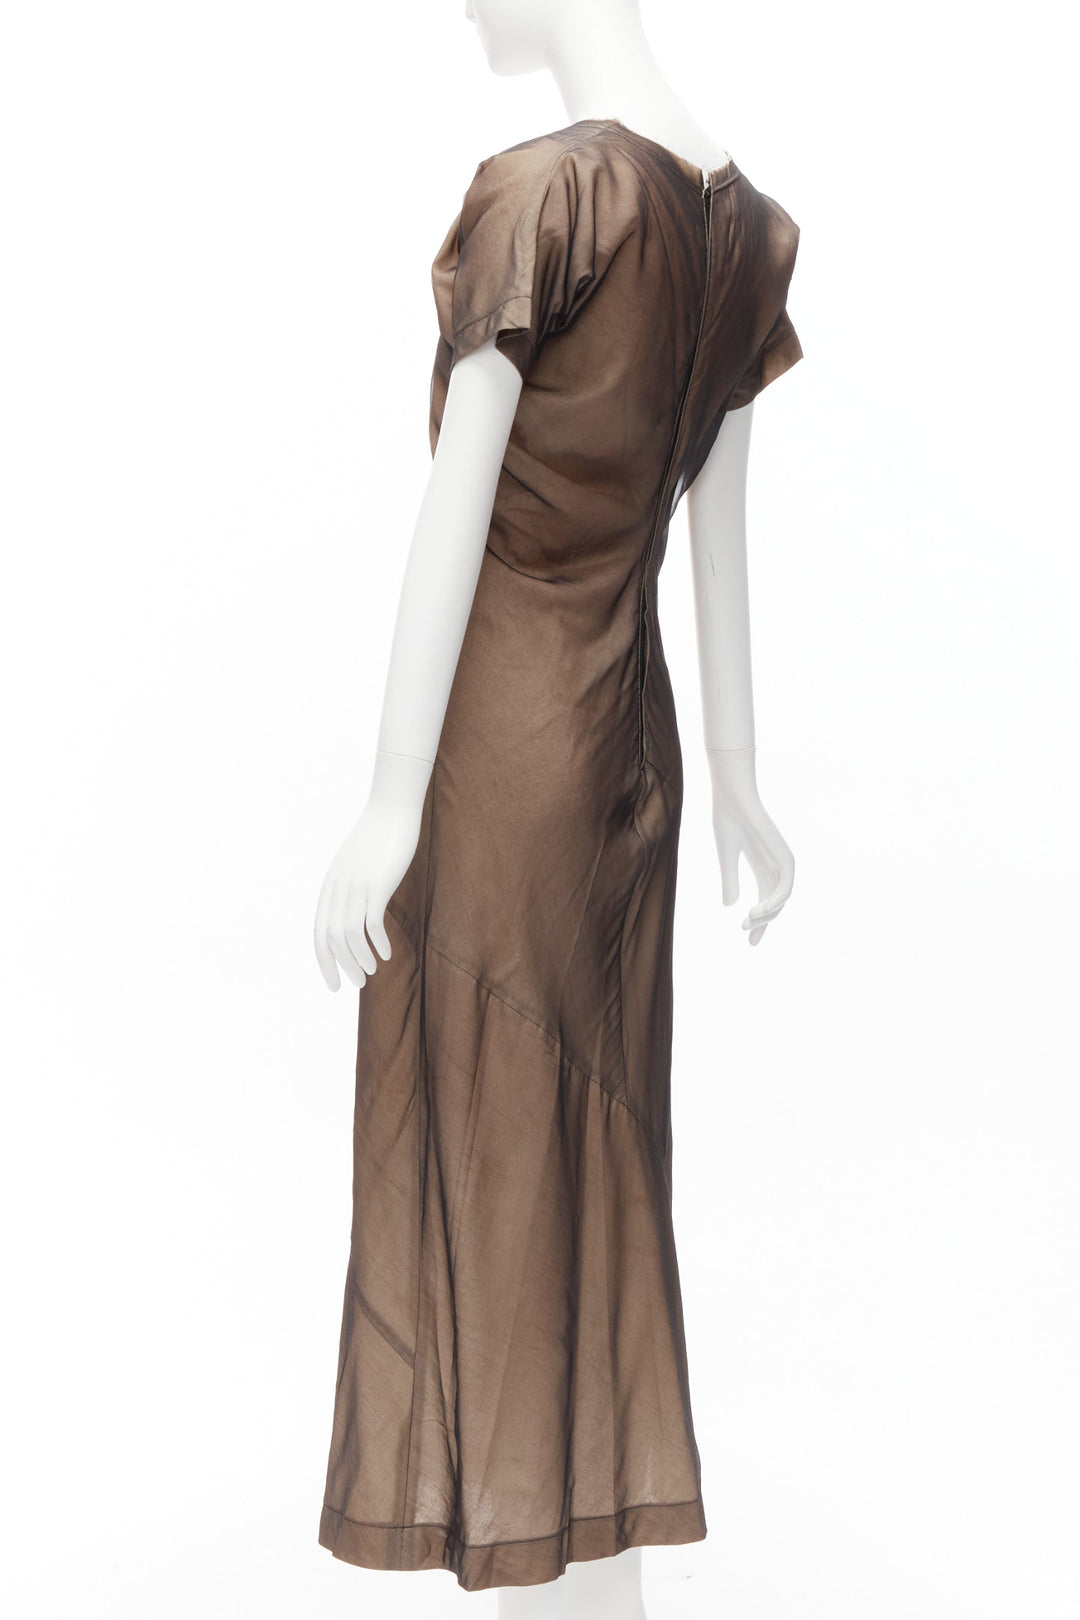 COMME DES GARCONS Vintage nude black sheer overlay A-line dress S Cindy Sherman